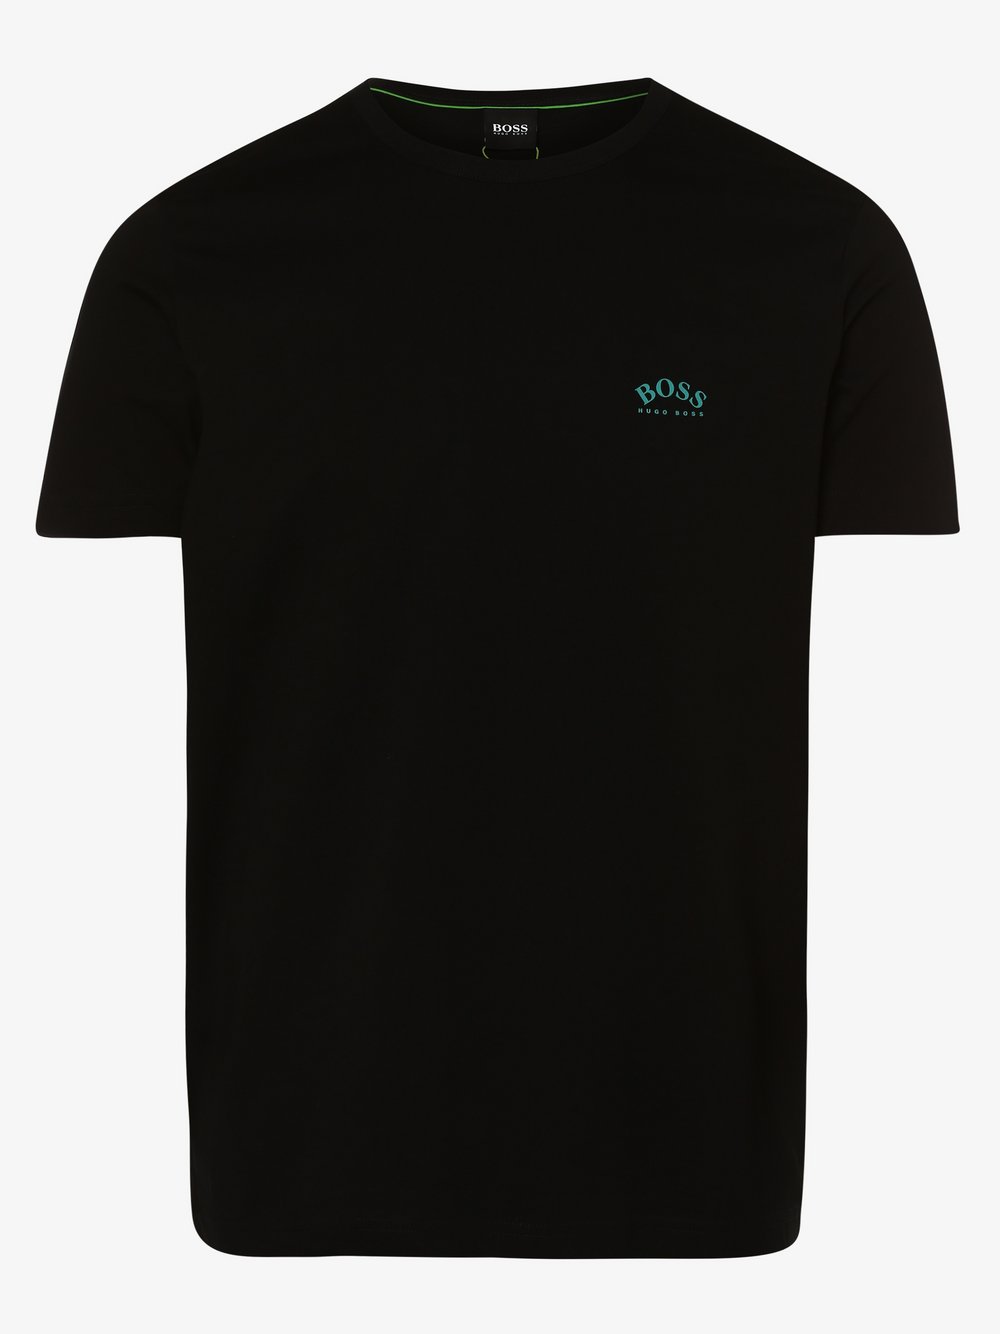 BOSS Athleisure - T-shirt męski – Tee Curved, czarny